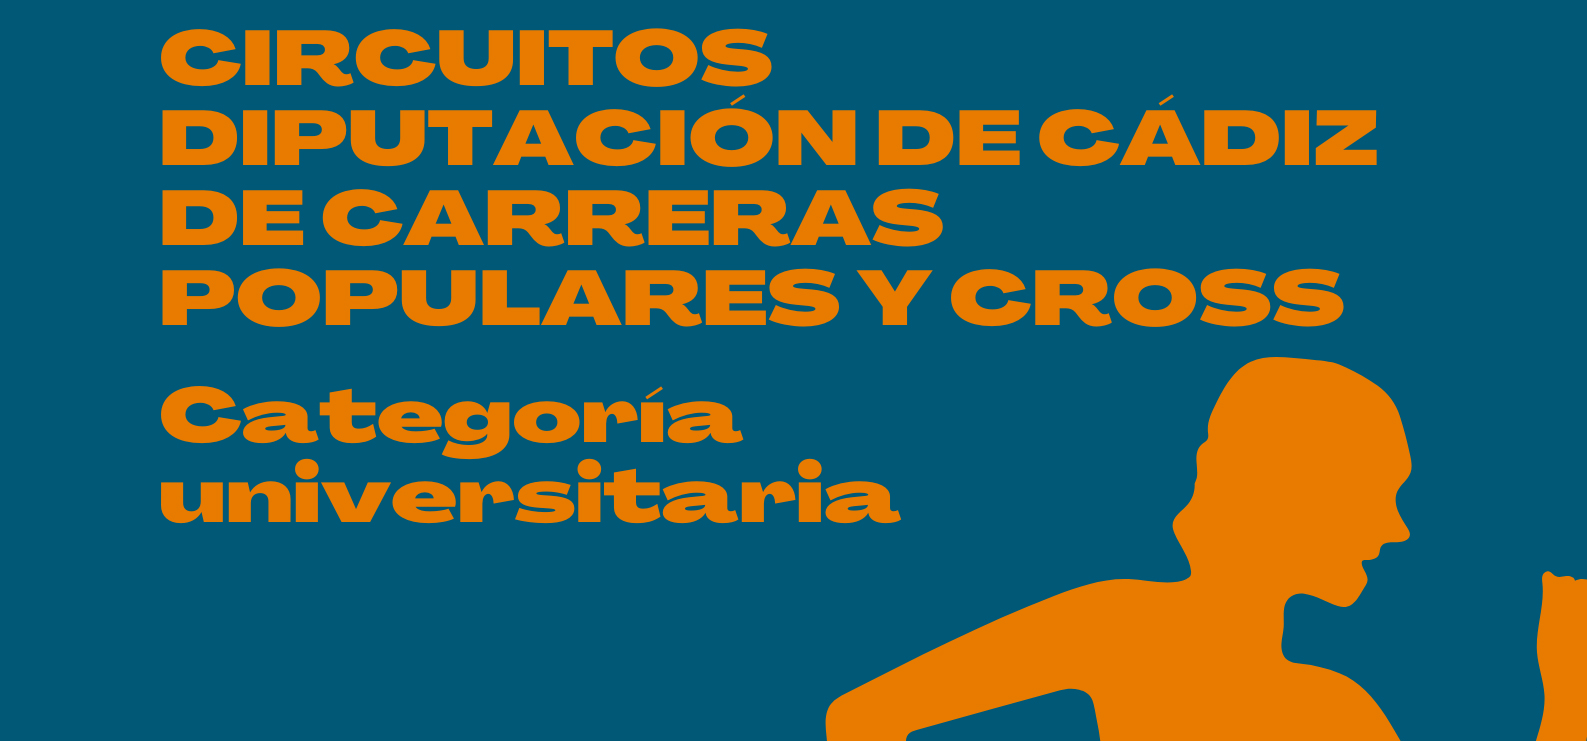 Circuitos Diputación de Cádiz de Carreras Populares y de Cross con categoría universitaria